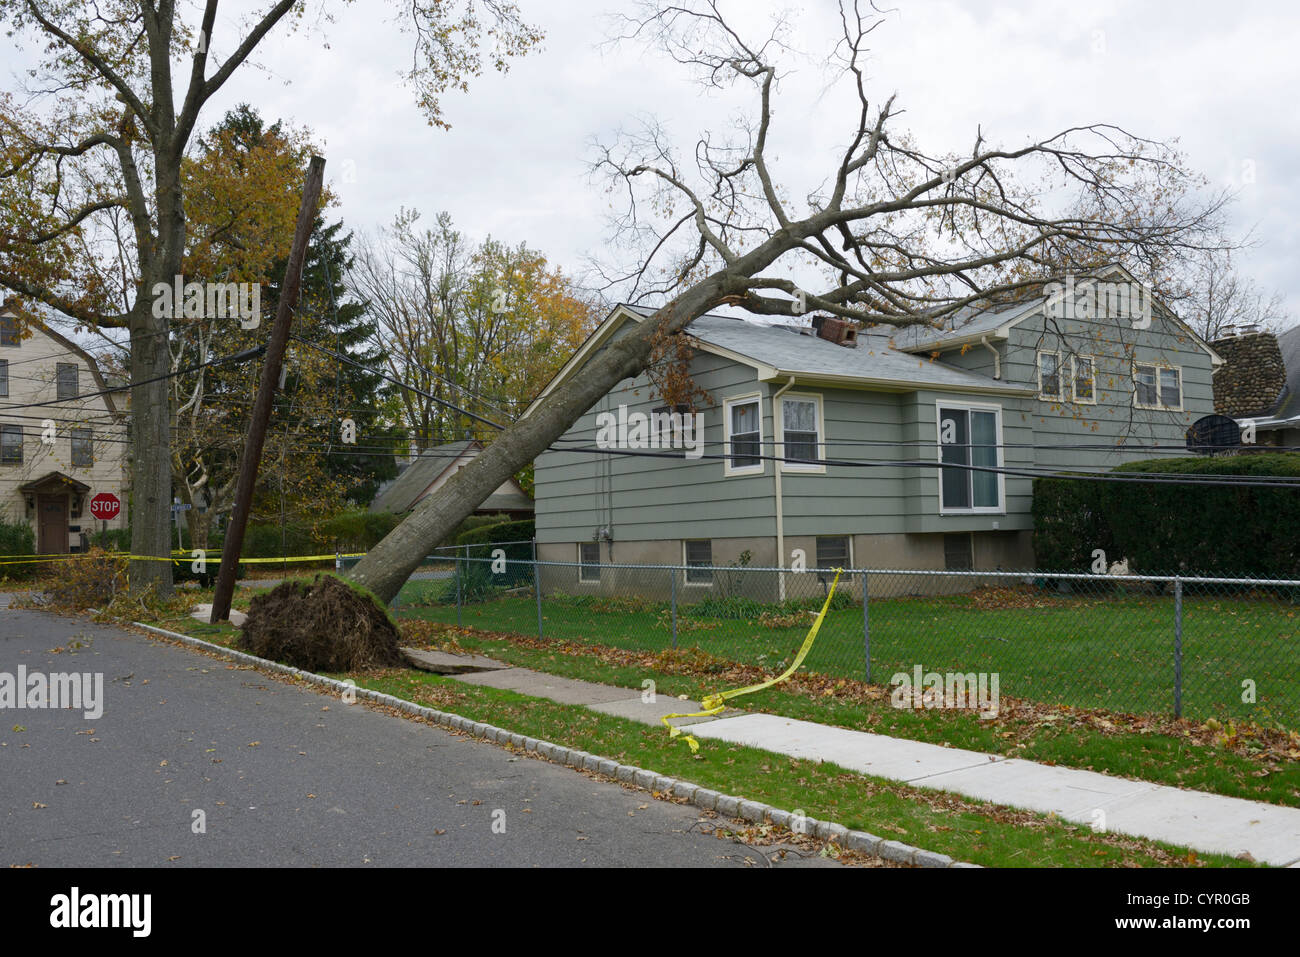 La destrucción de casas, árboles y líneas eléctricas provocadas por el huracán arenosa, norte de Nueva Jersey Foto de stock